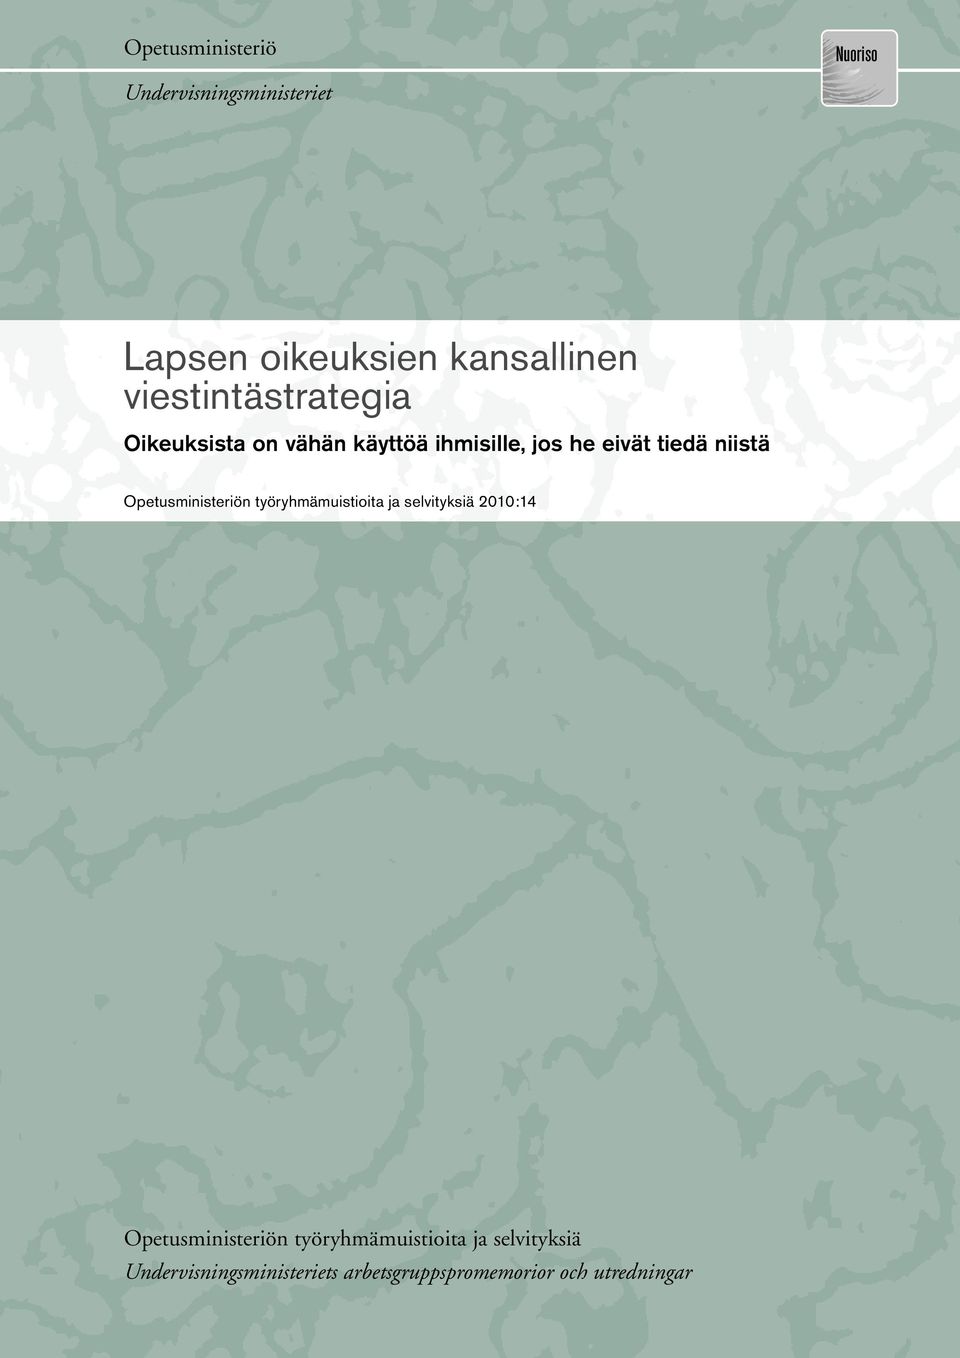 Opetusministeriön työryhmämuistioita ja selvityksiä 2007:17 2010:14 Opetusministeriön